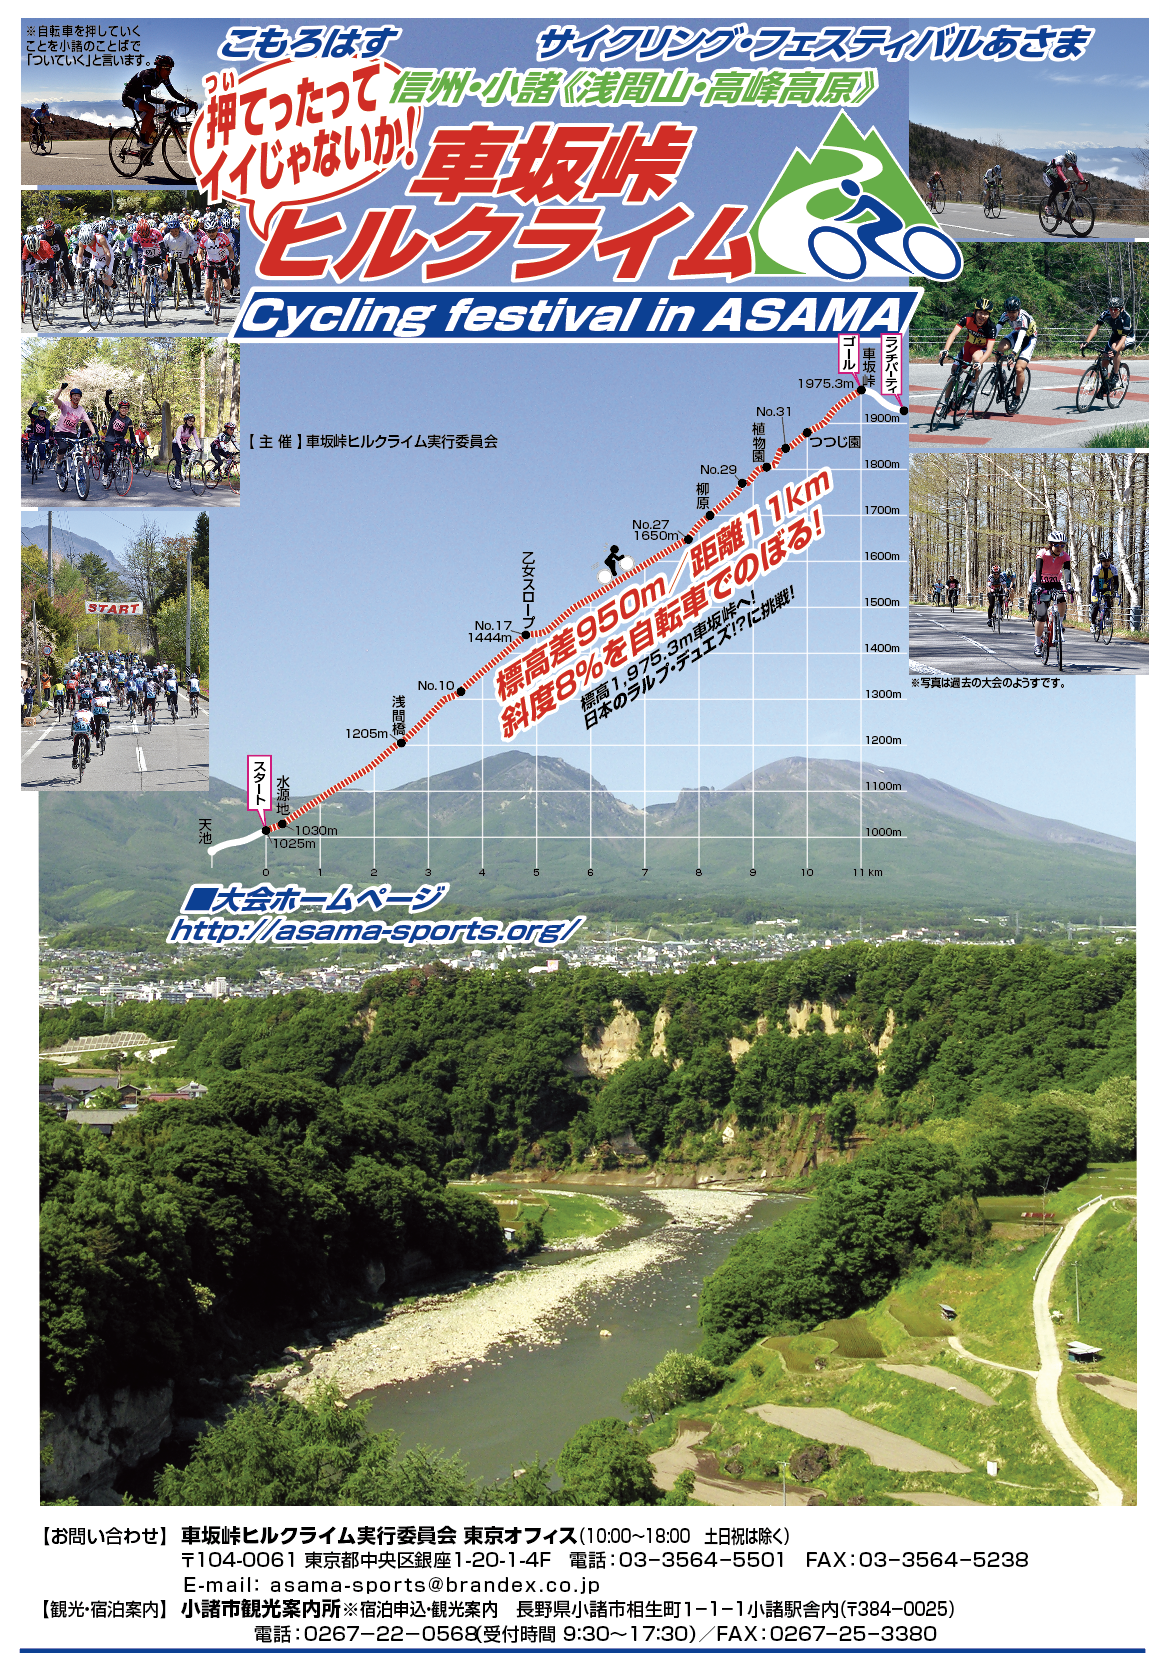 サイクリング・フェスティバルあさま「車坂峠ヒルクライム・2020大会」